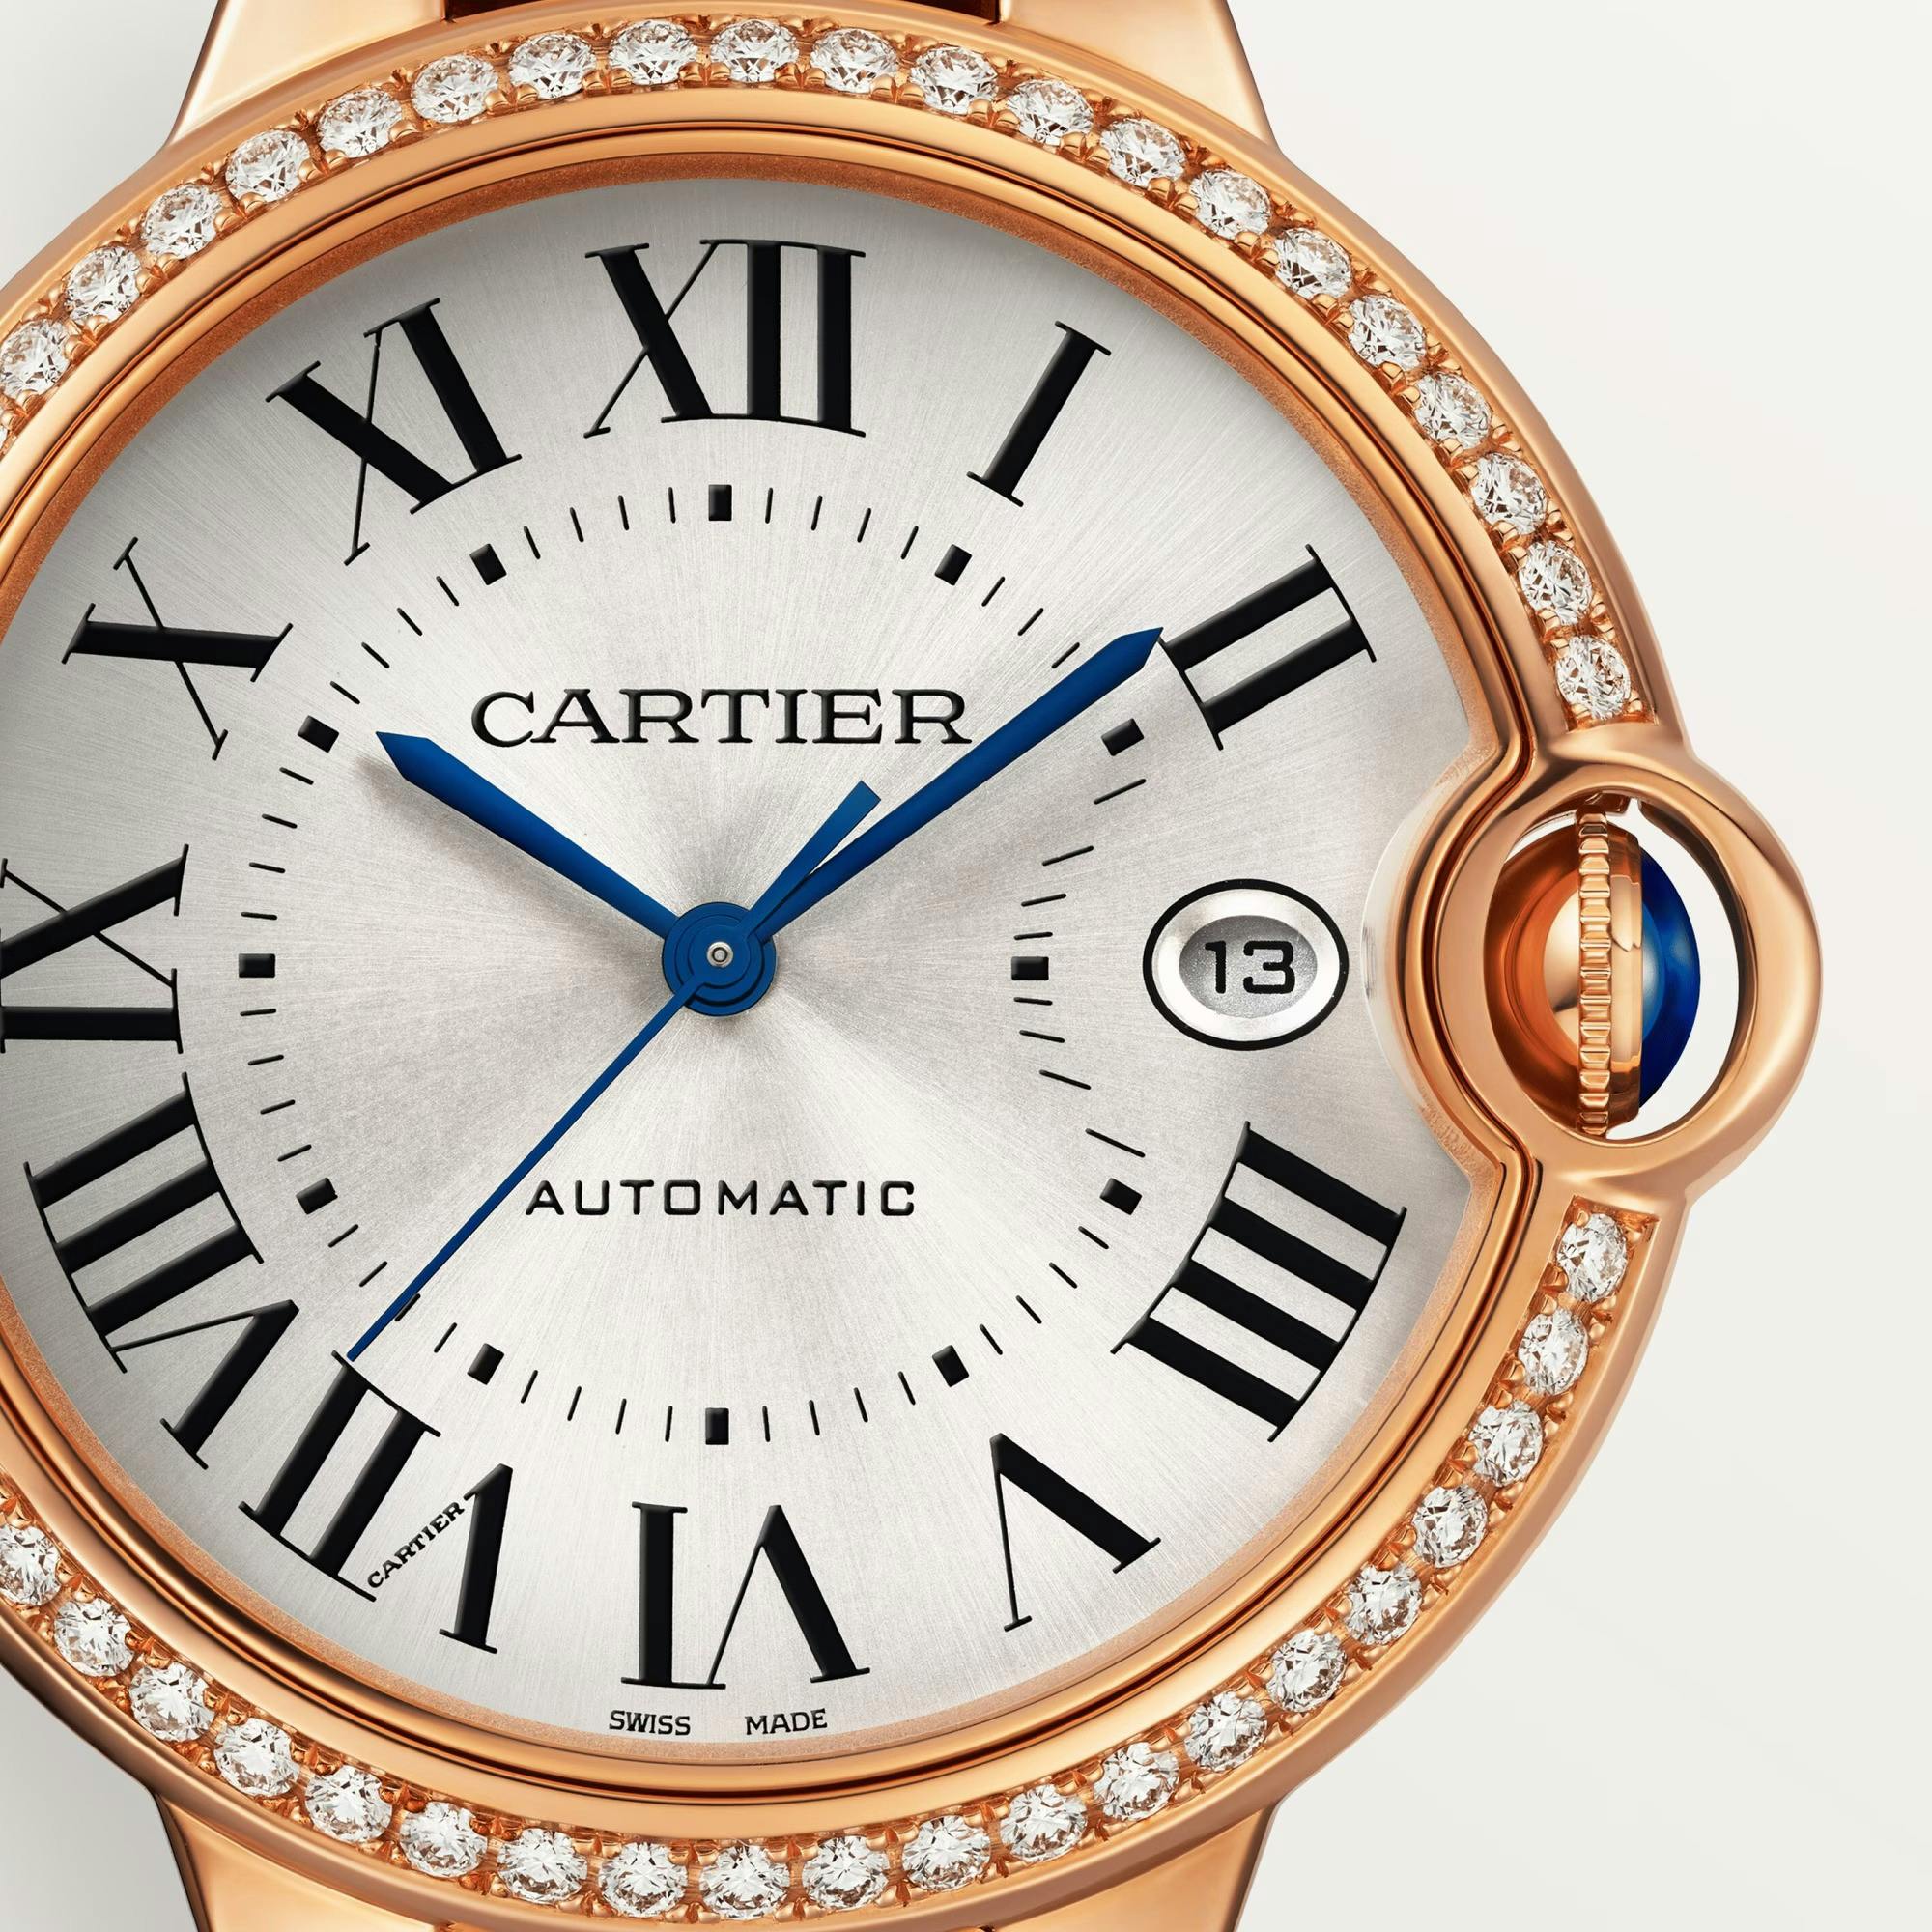 Ballon Bleu de Cartier Watch in Rose Gold with Diamond, 40mm 1